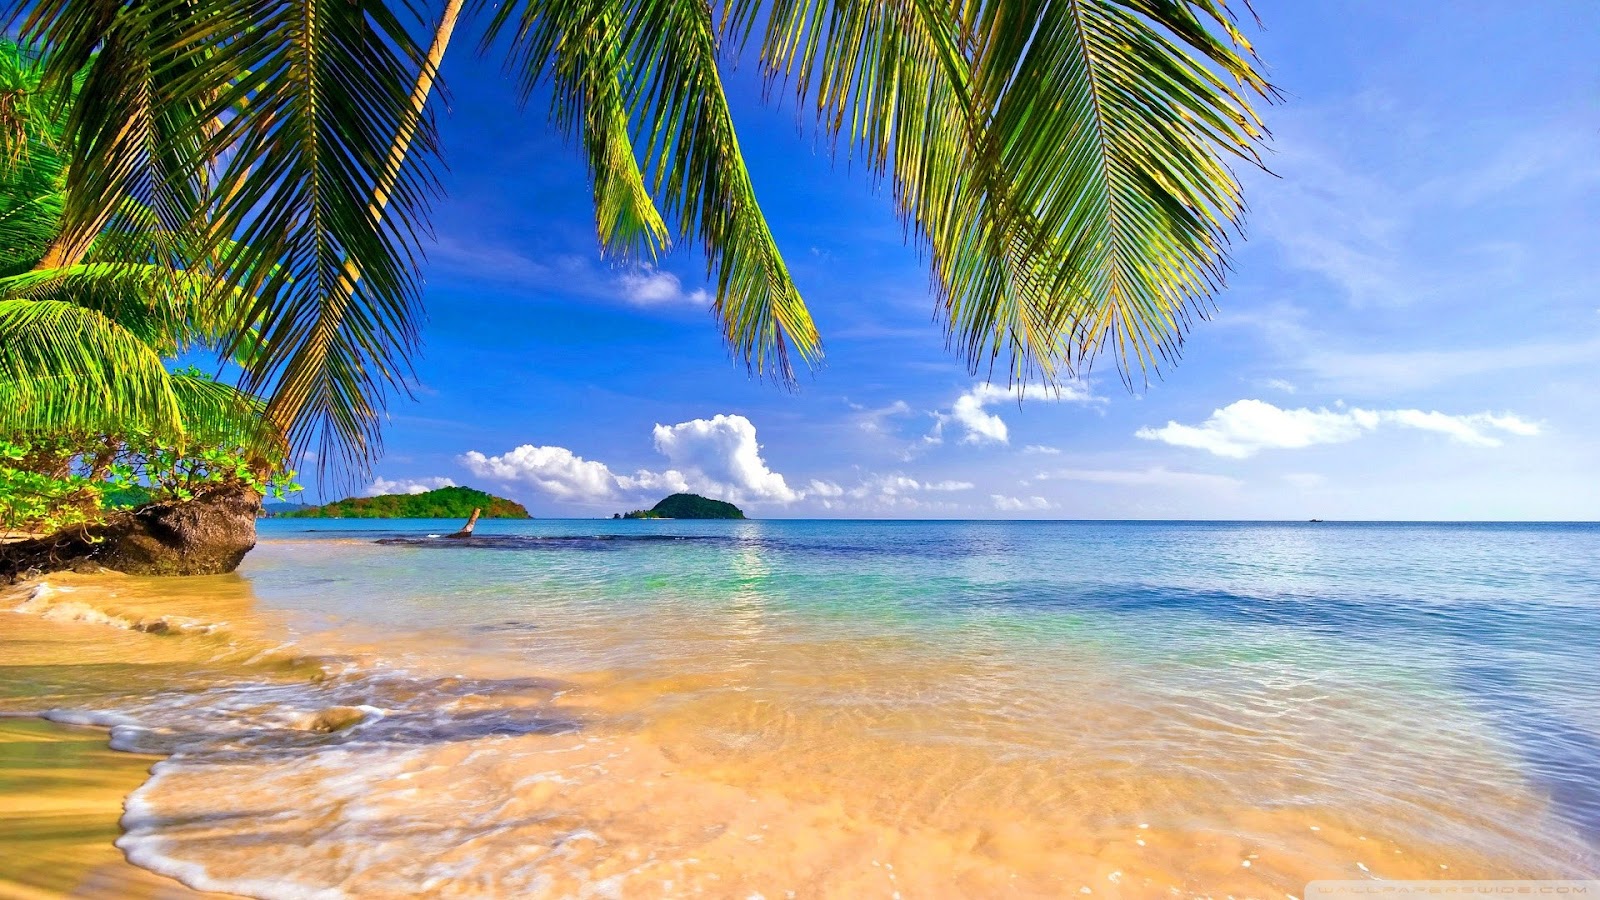 Tải 70 hình ảnh biển xanh đẹp nhất thế giới về máy tính - Ảnh nền máy tính Full HD về hình bãi biển xanh ngát - Viettelinternet24h.com